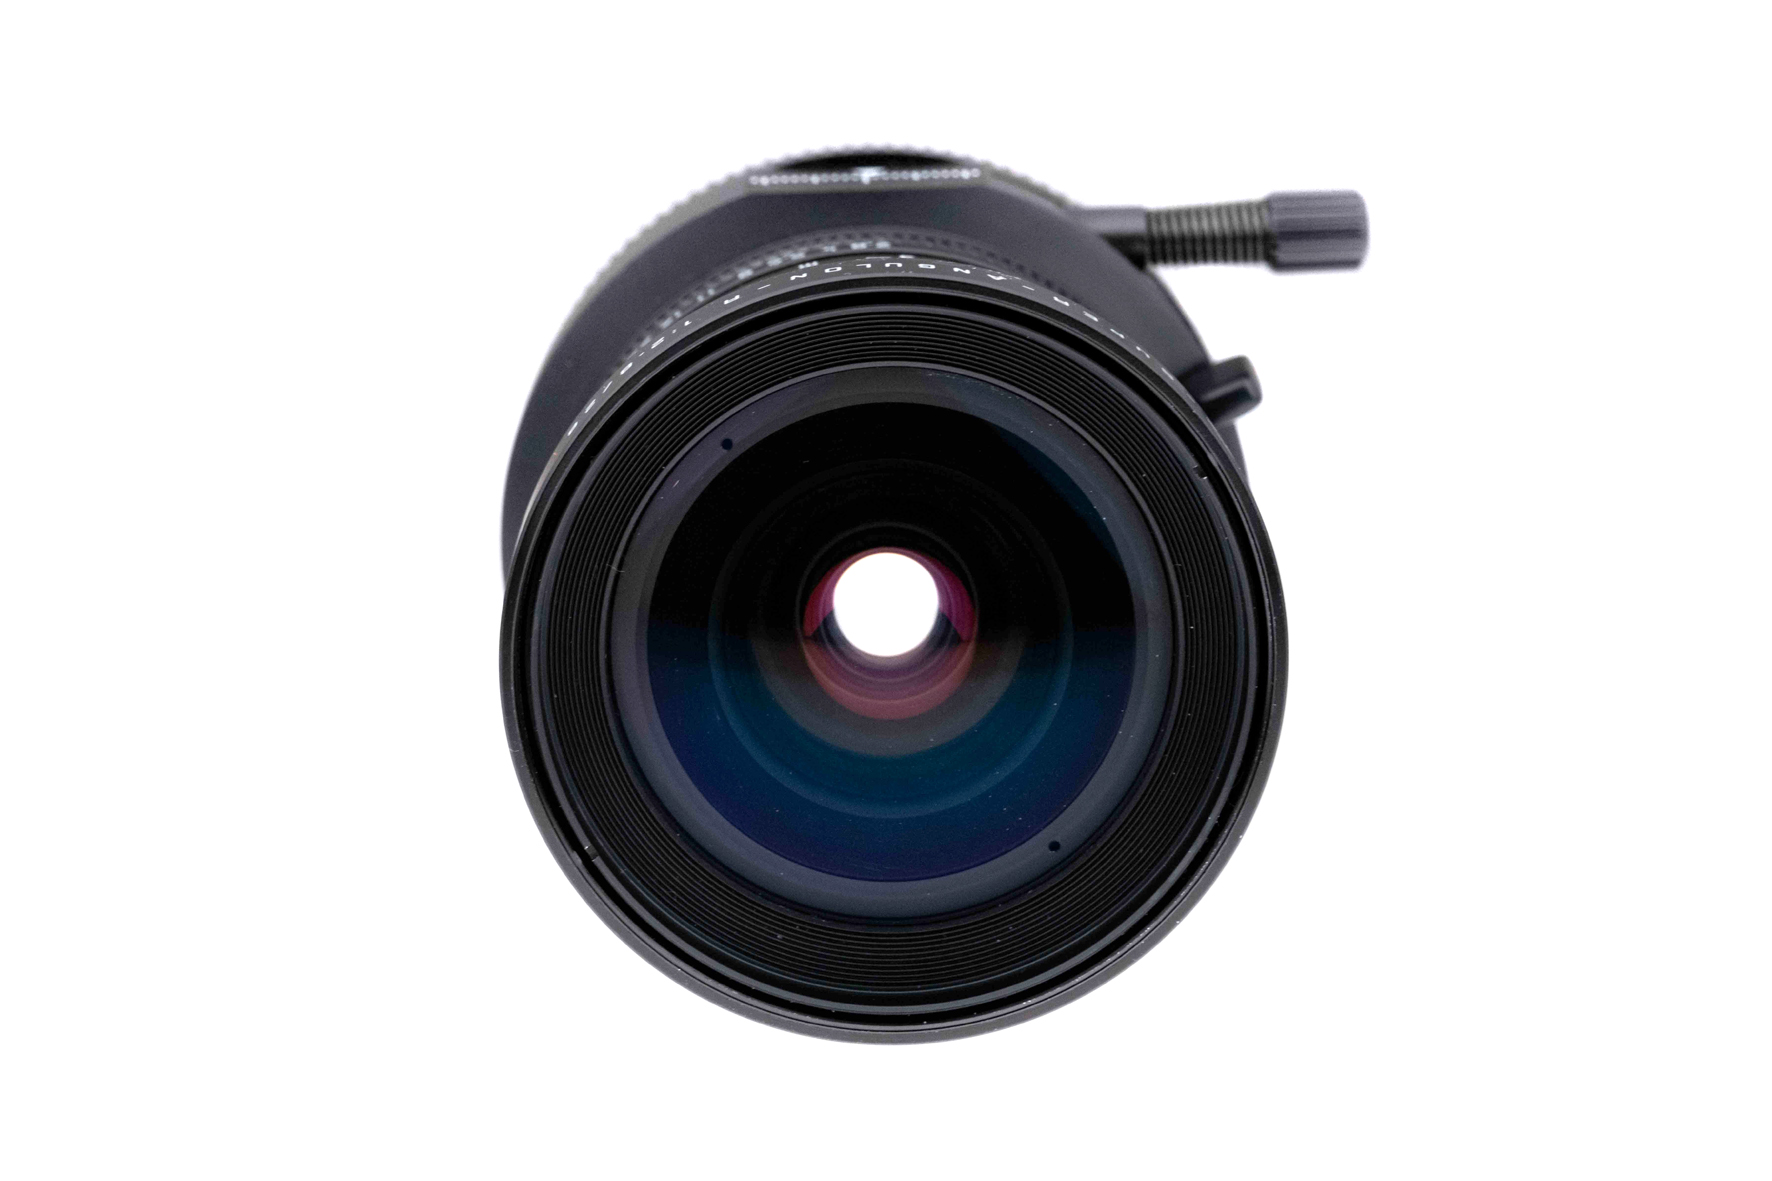 Leica PC-Super-Angulon-R 2,8/28mm 